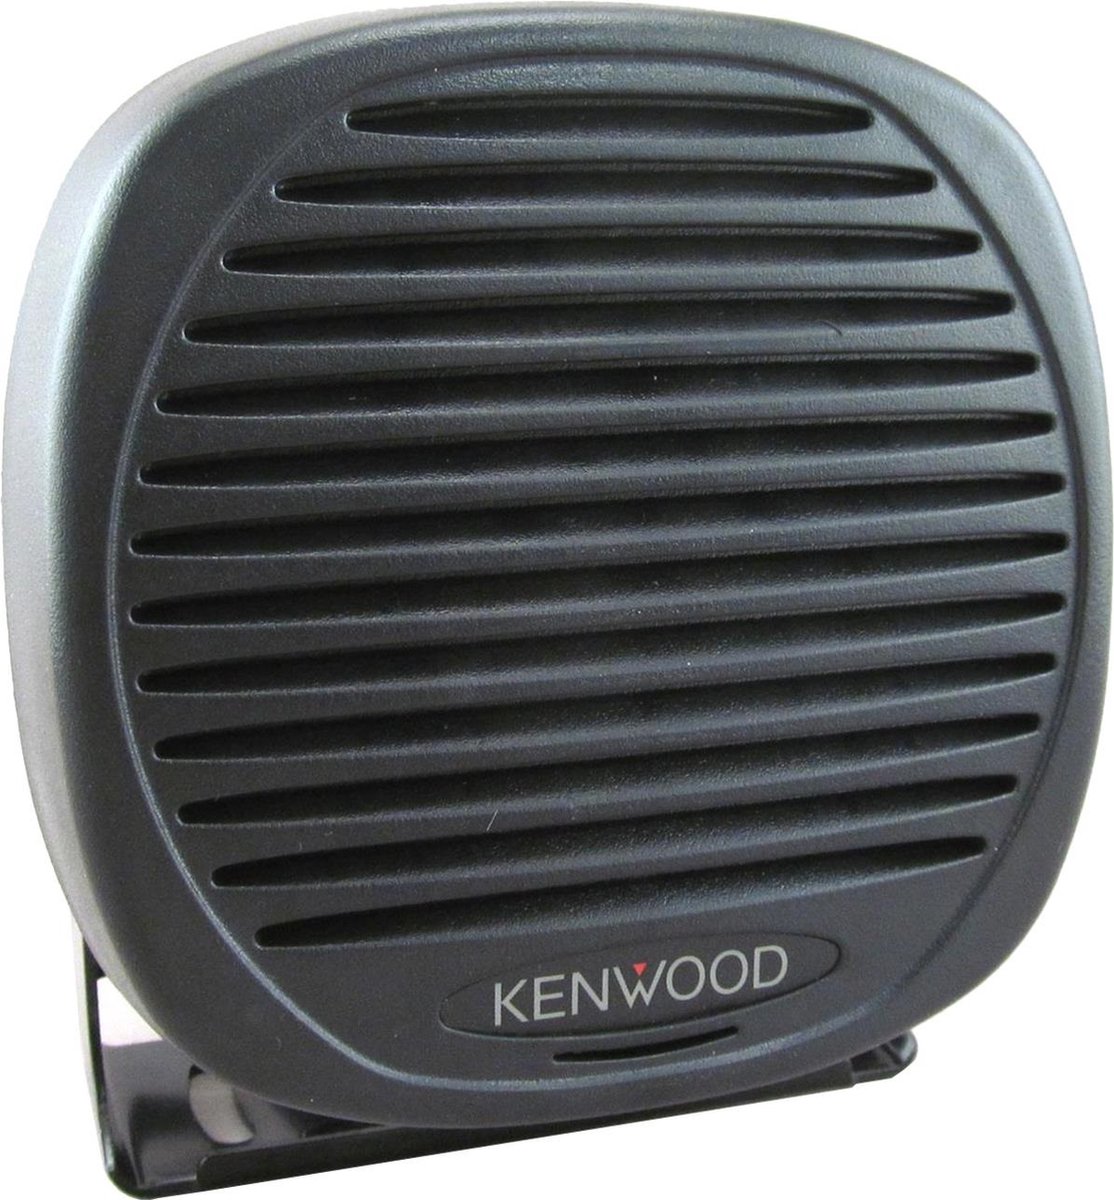 Kenwood KES-5A Externe speaker voor Kenwood mobilfoon (ZONDER PLUG)